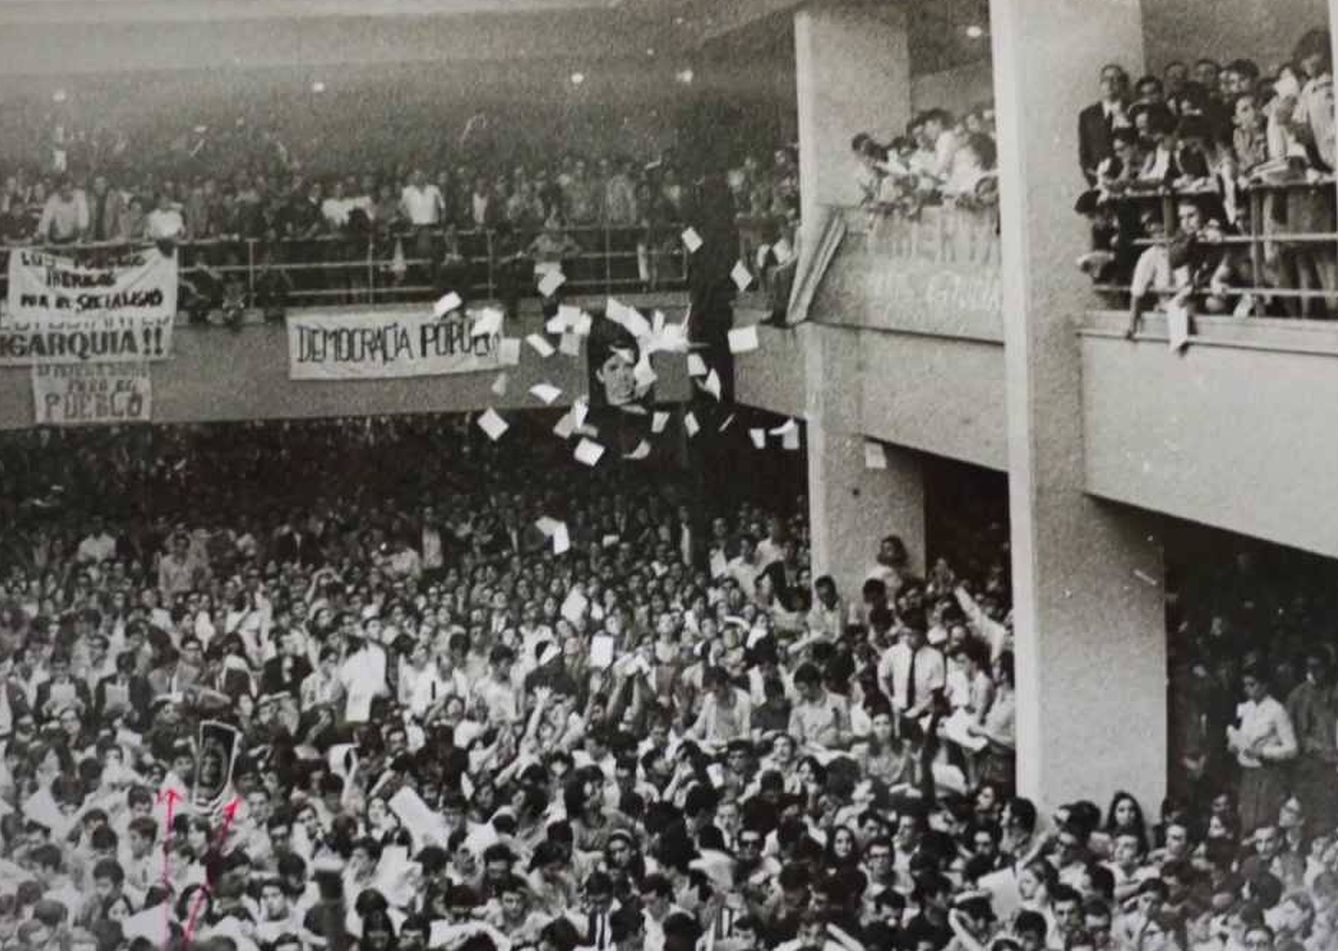 La facultad de Económicas de la Complutense de Madrid (hoy Geografía e Historia) durante el concierto de Raimon el 18 de mayo de 1968.